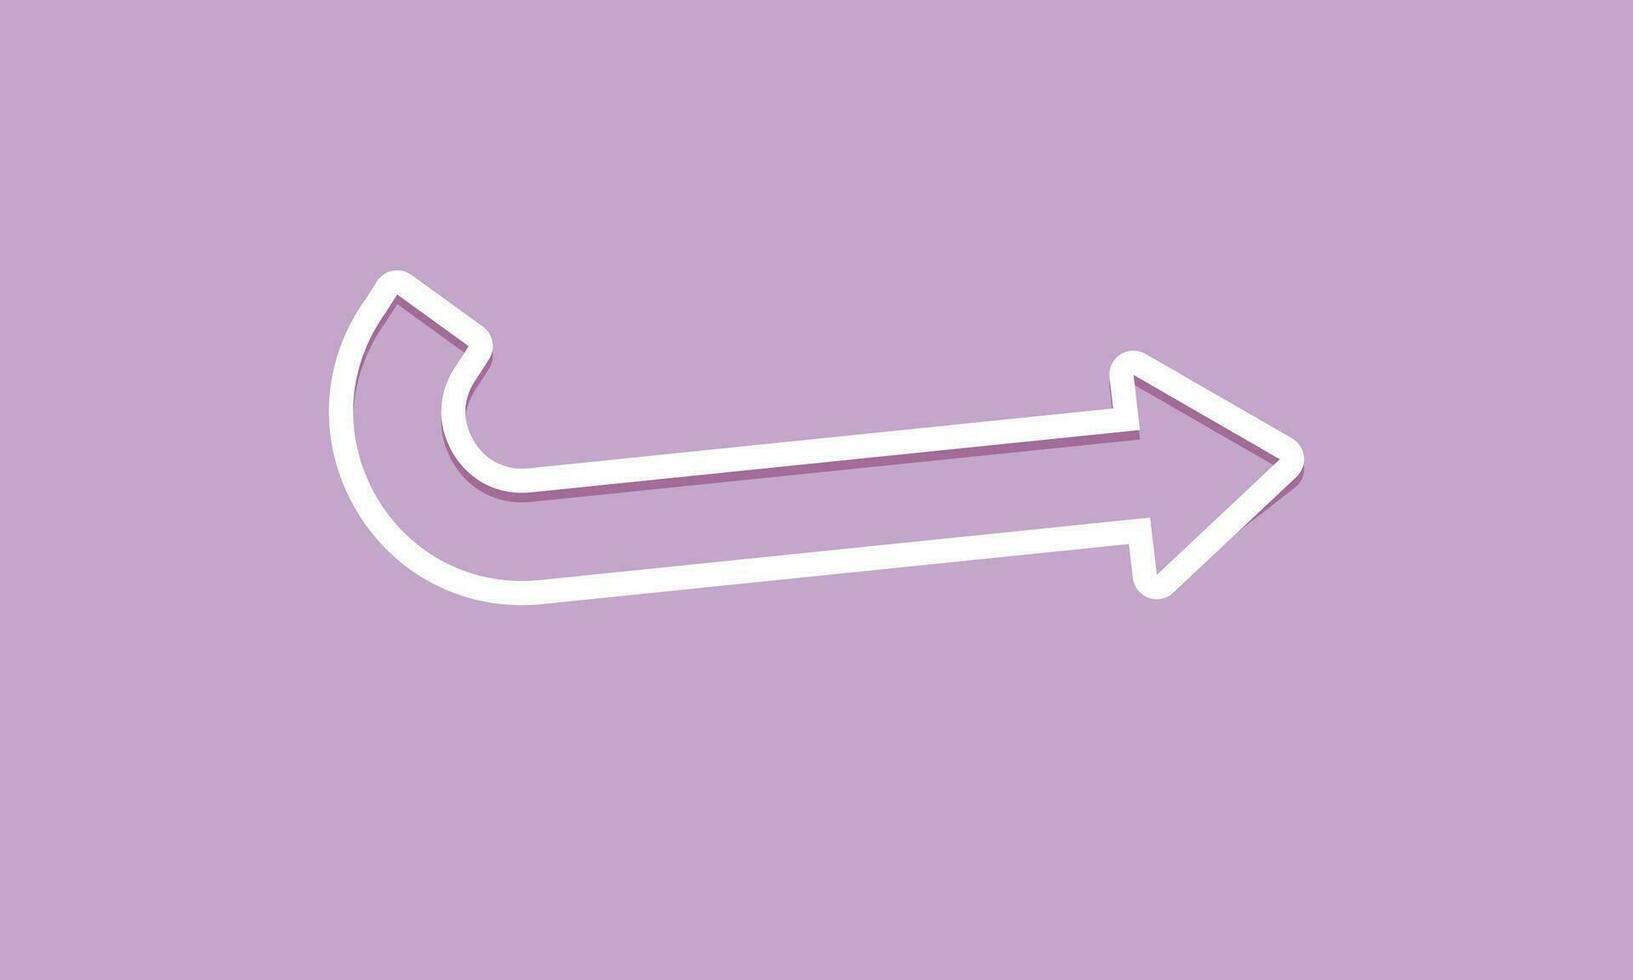 Vector hand drawn arrow icon